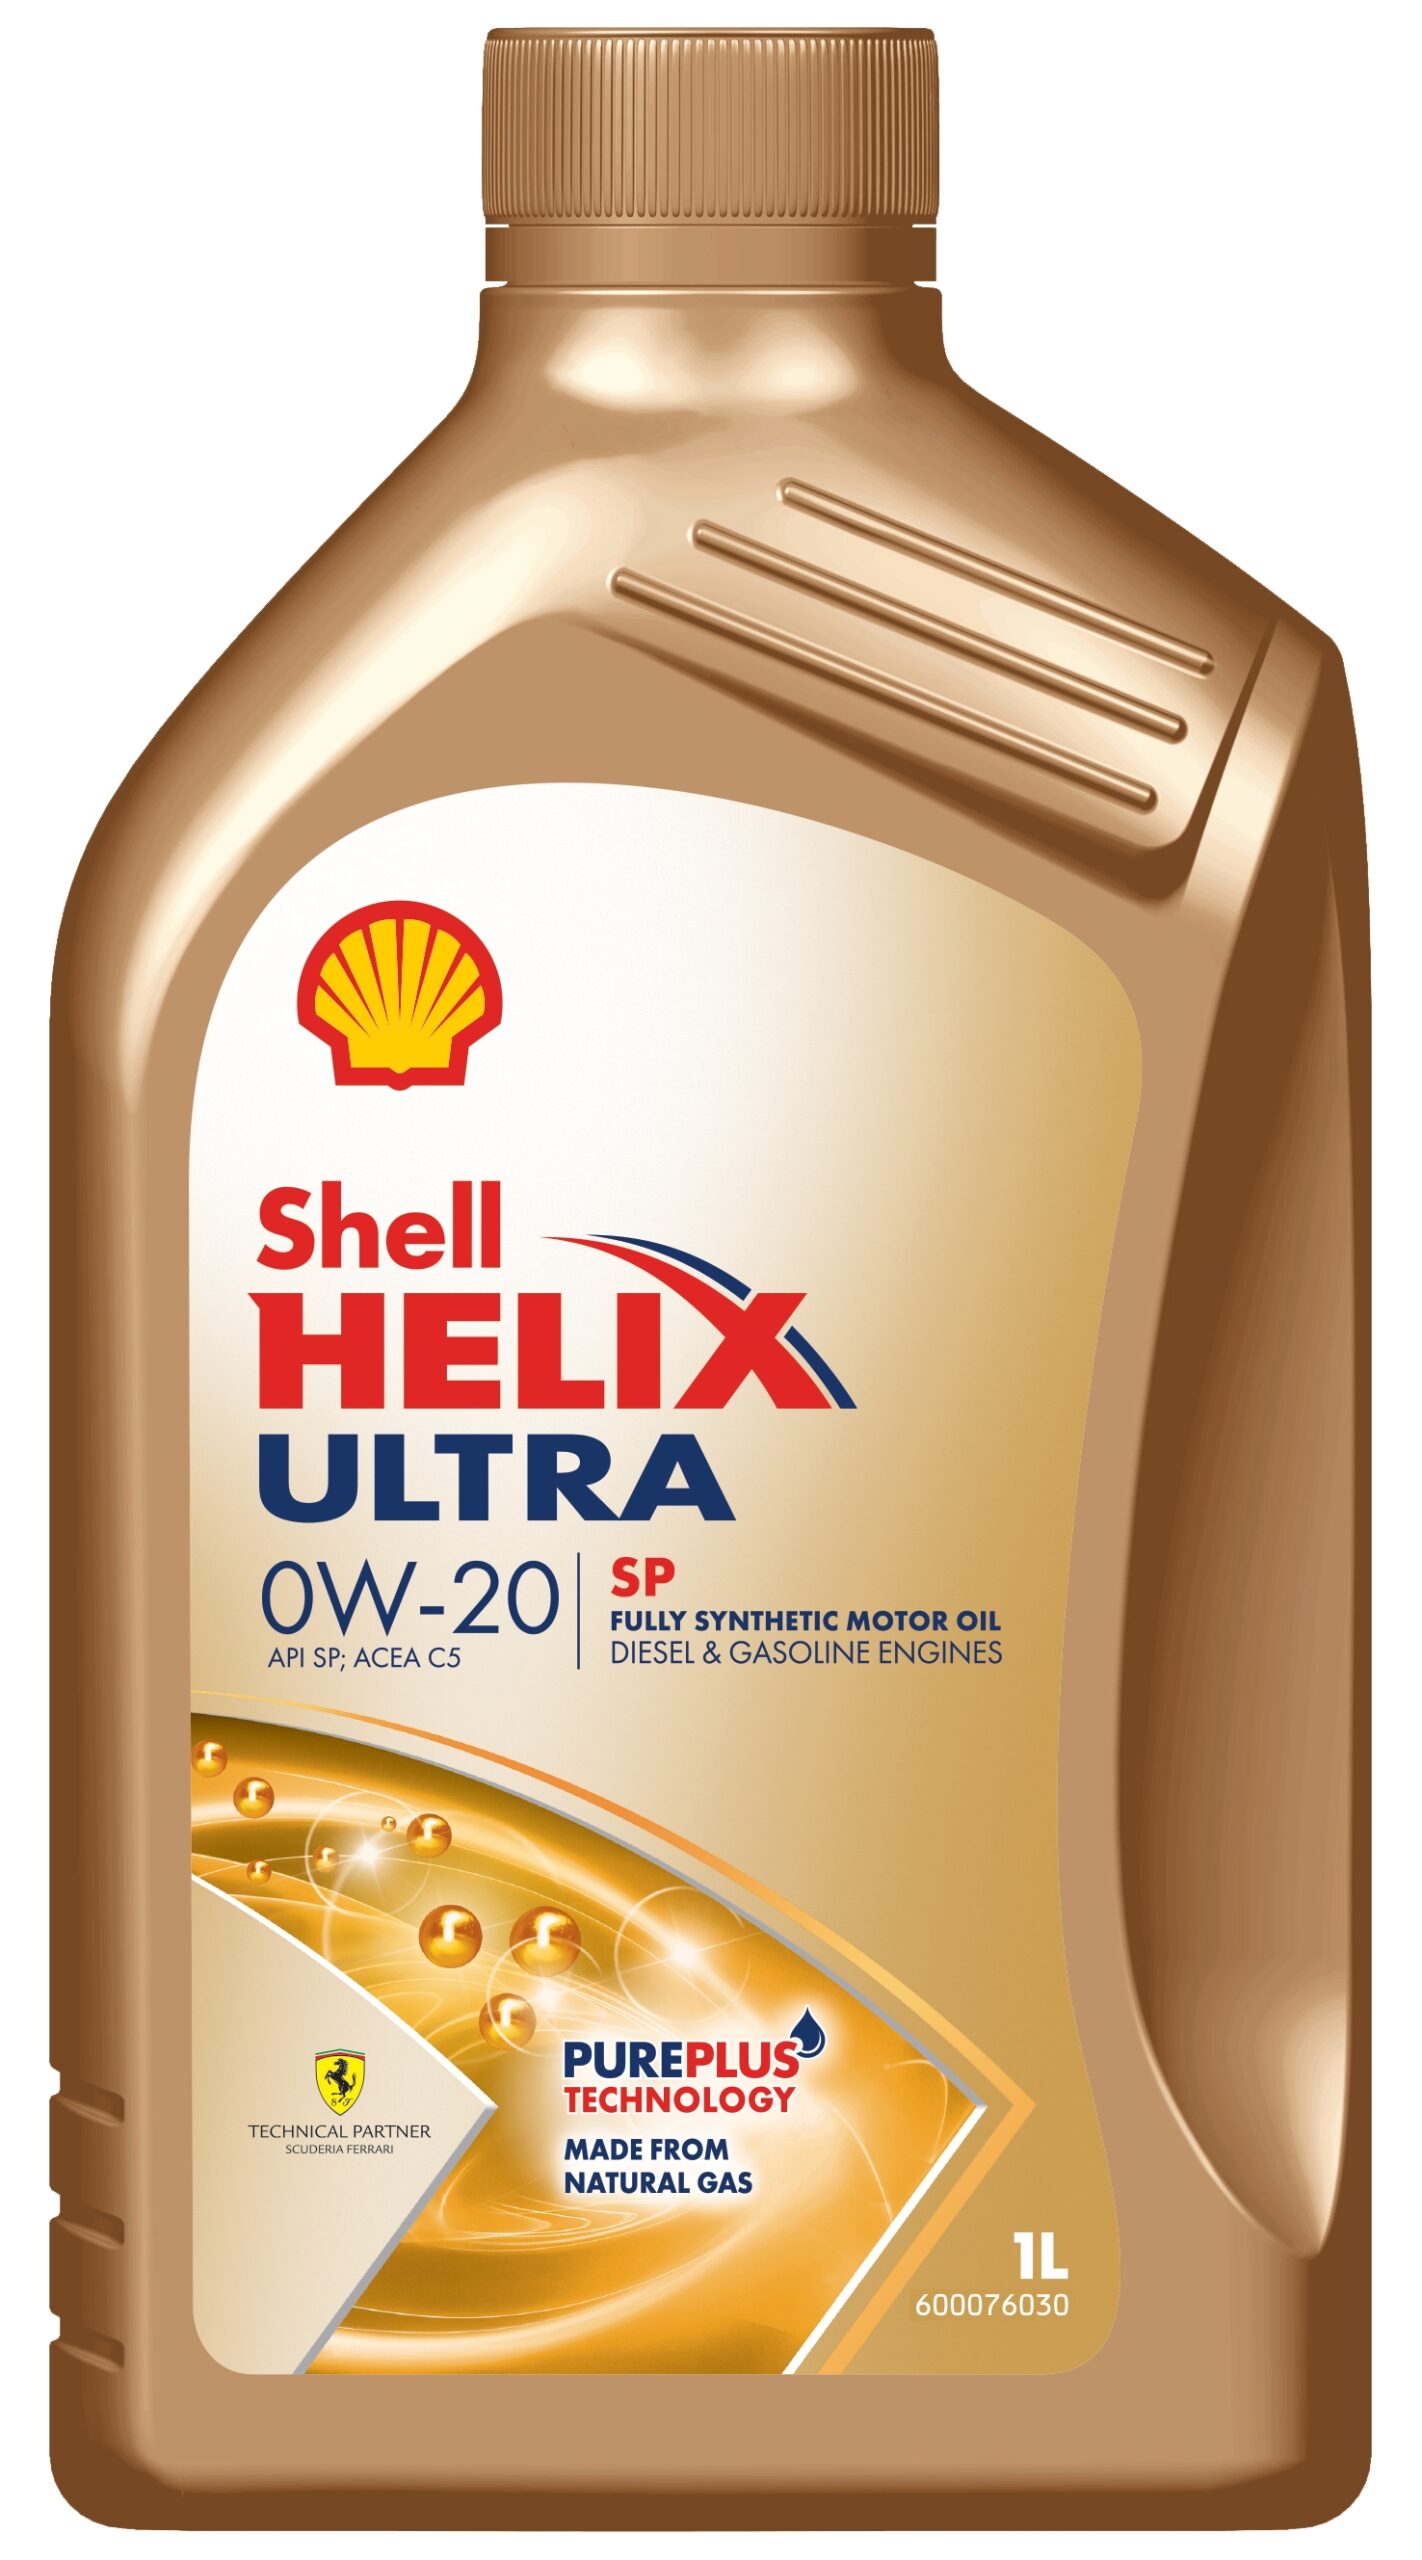 Shell: eccellenza nel settore dei lubrificanti e opportunità per i Top Dealers Italia.